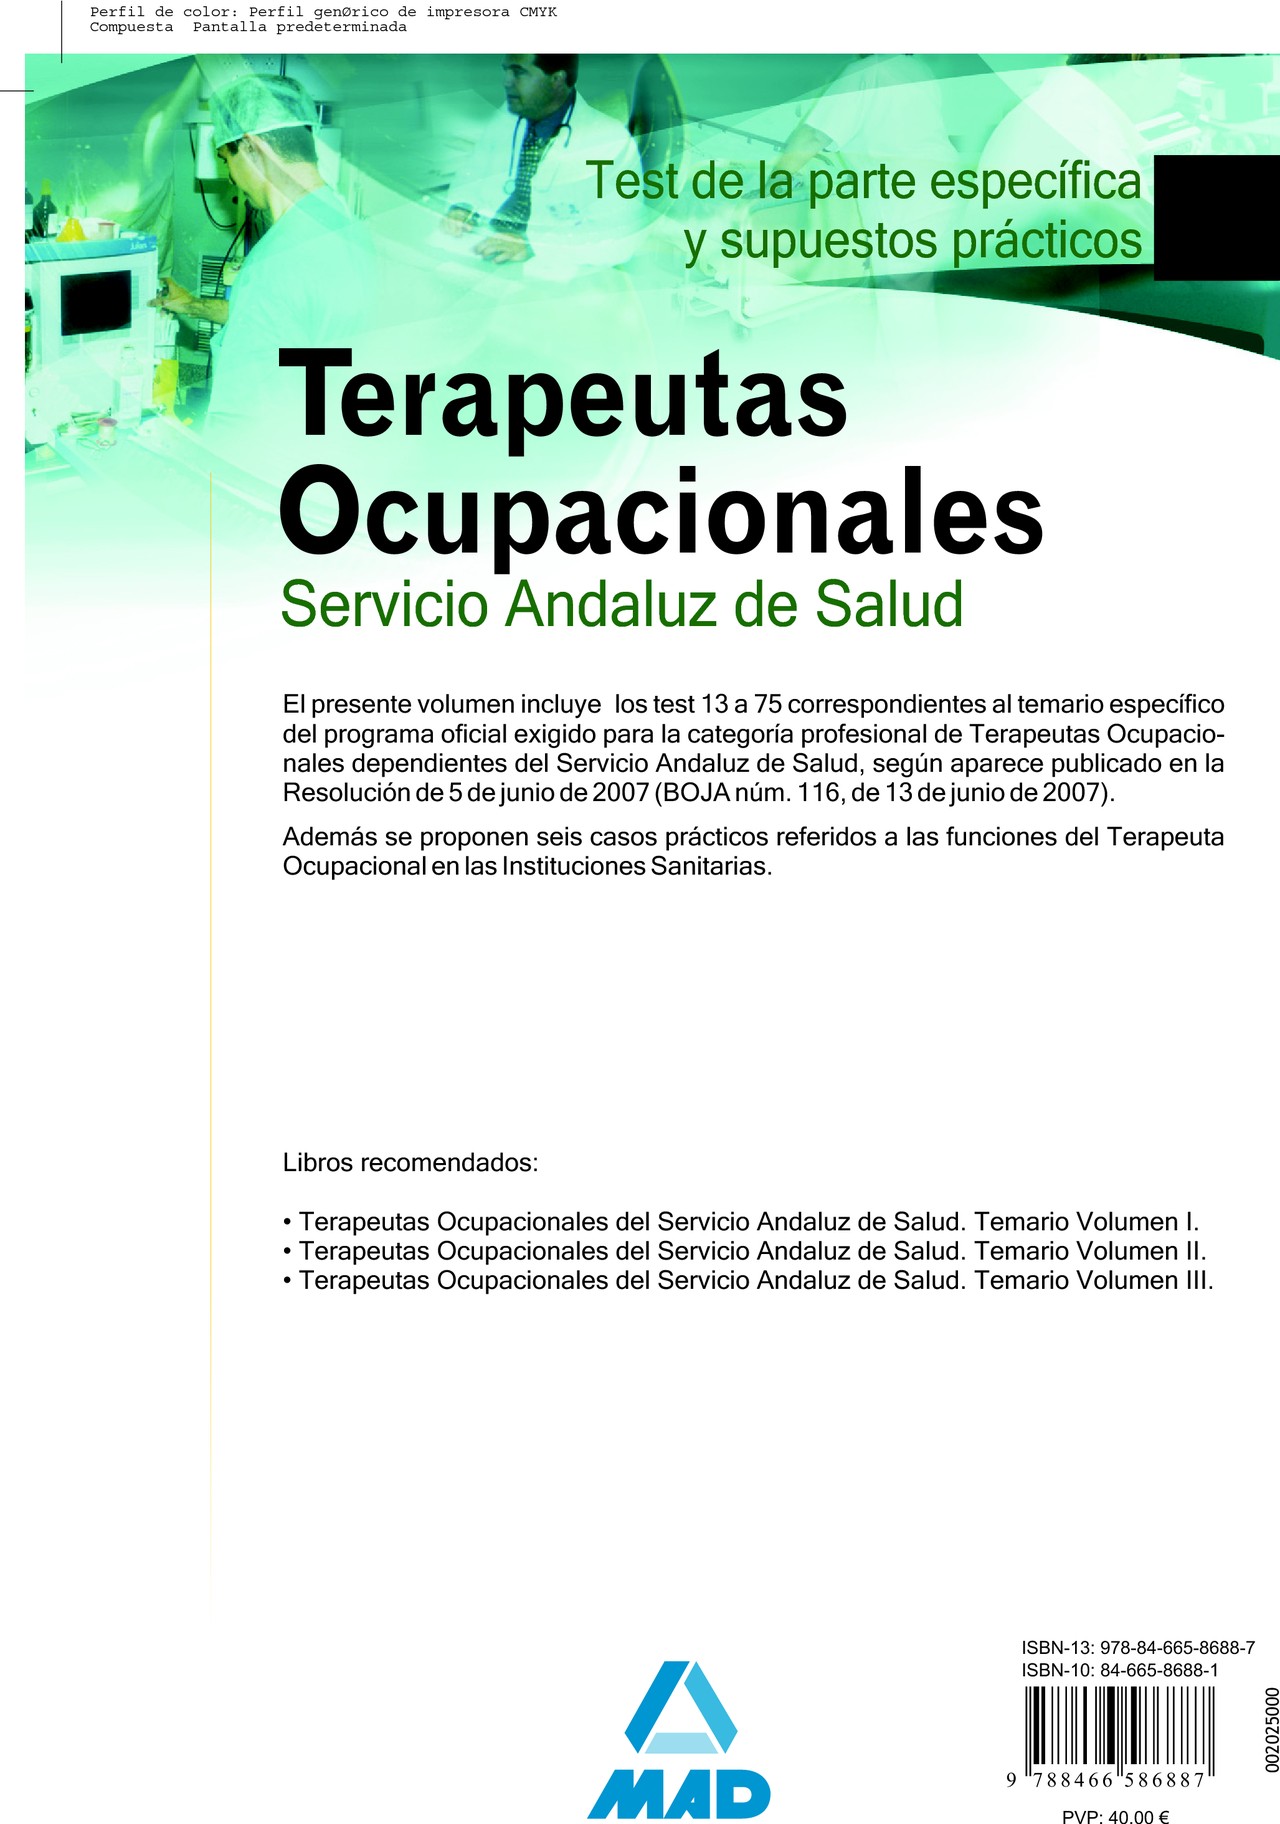 Terapeutas Ocupacionales del Servicio Andaluz de Test Parte Específica y Supuestos Prácticos.